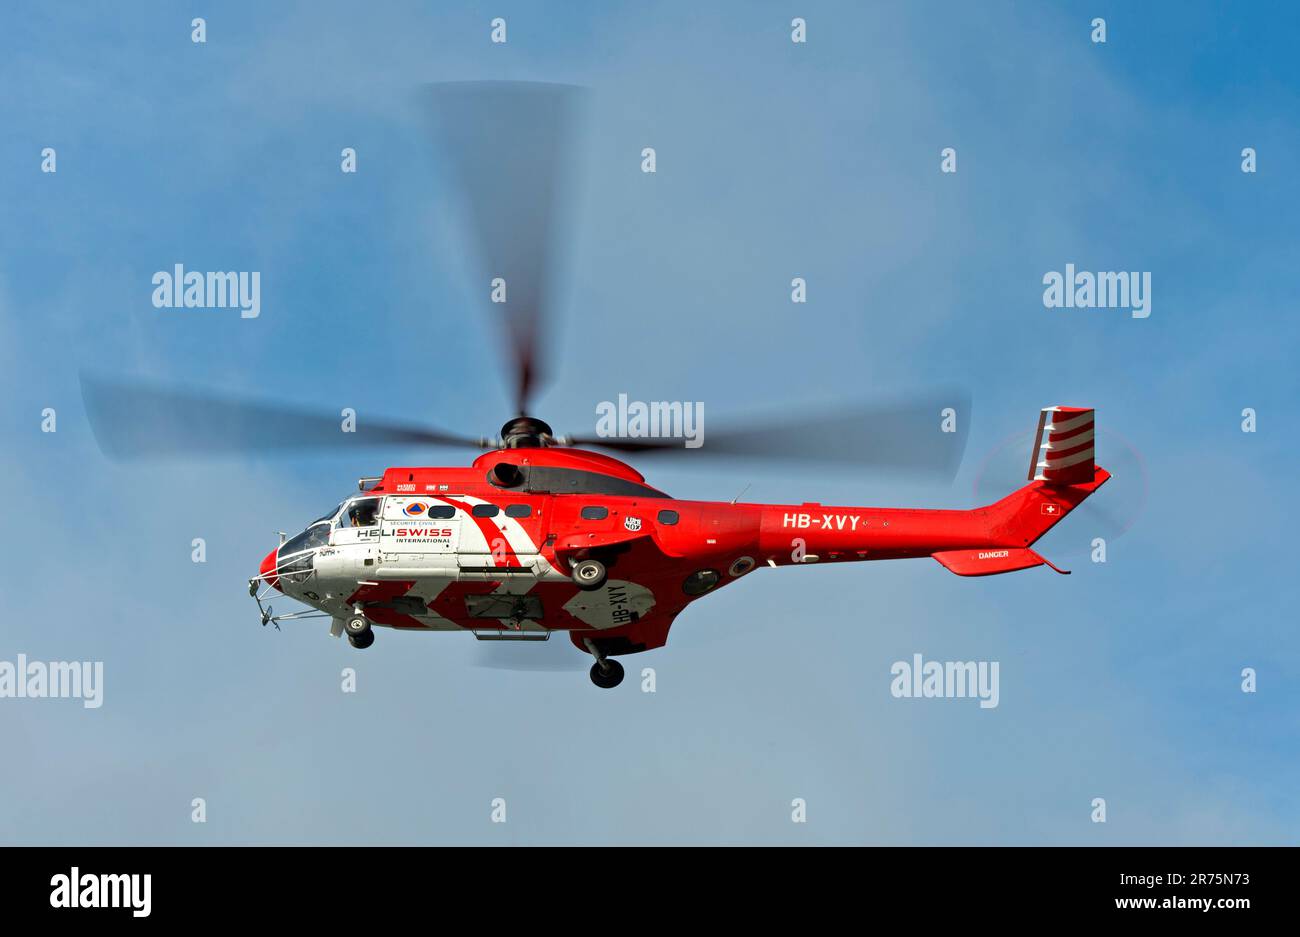 Elicottero da trasporto multiuso AS 332 Super Puma C1 HB-XVY di Heliswiss International AG in volo, Vallese, Svizzera Foto Stock